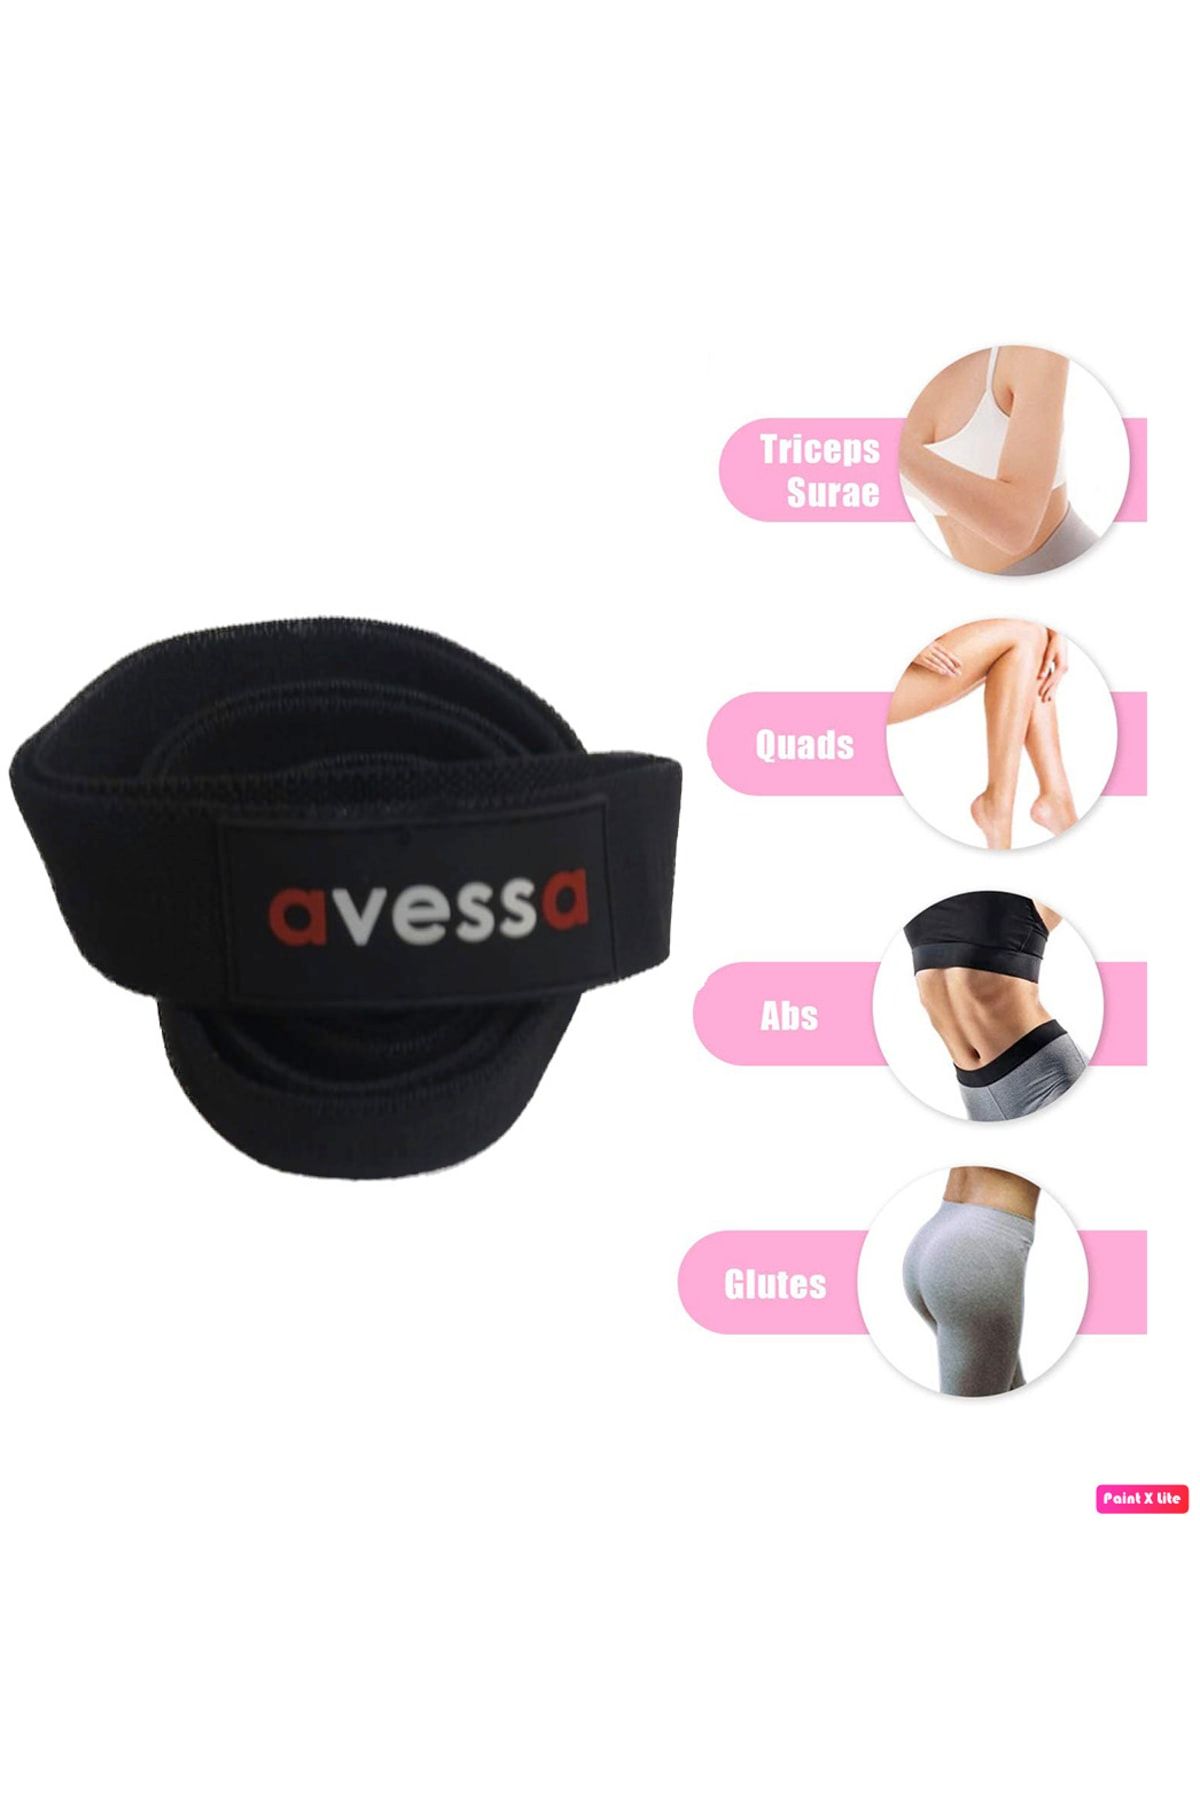 Avessa Lpb-300 Örme Güç Bandı Kalça Ve Bacak Güçlendirici Esneklik Kazandırıcı Yoga Direnç Lastiği